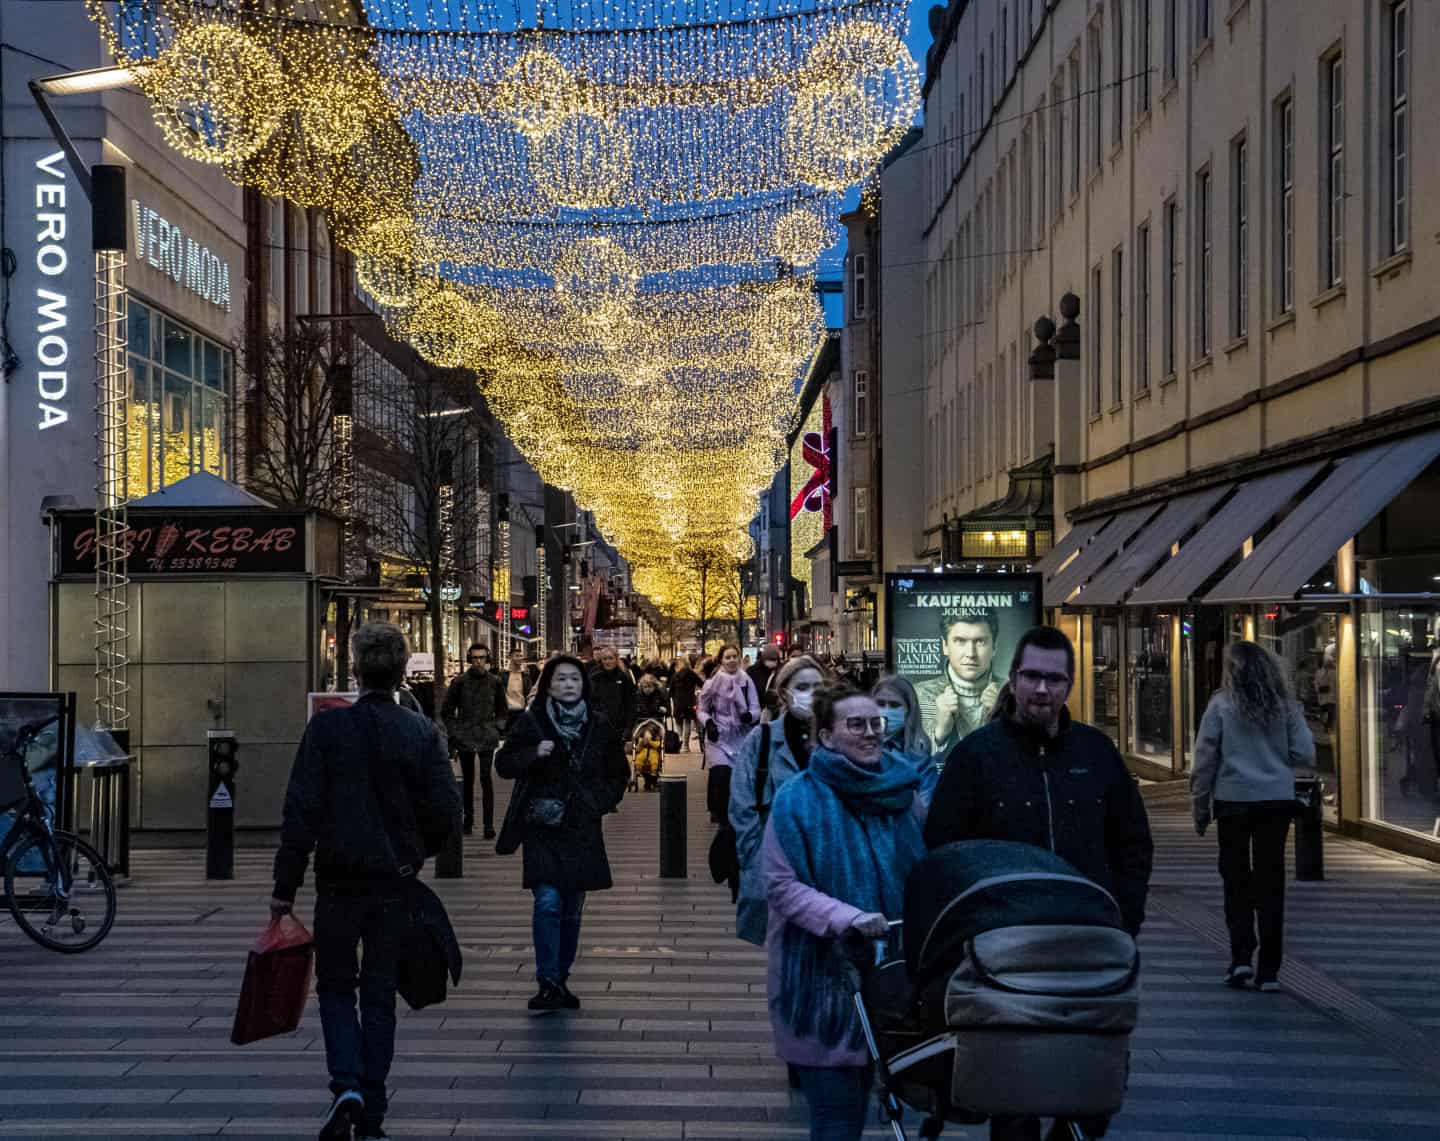 Trods corona og netbutikker: Strøget tror på julehandel | stiften.dk